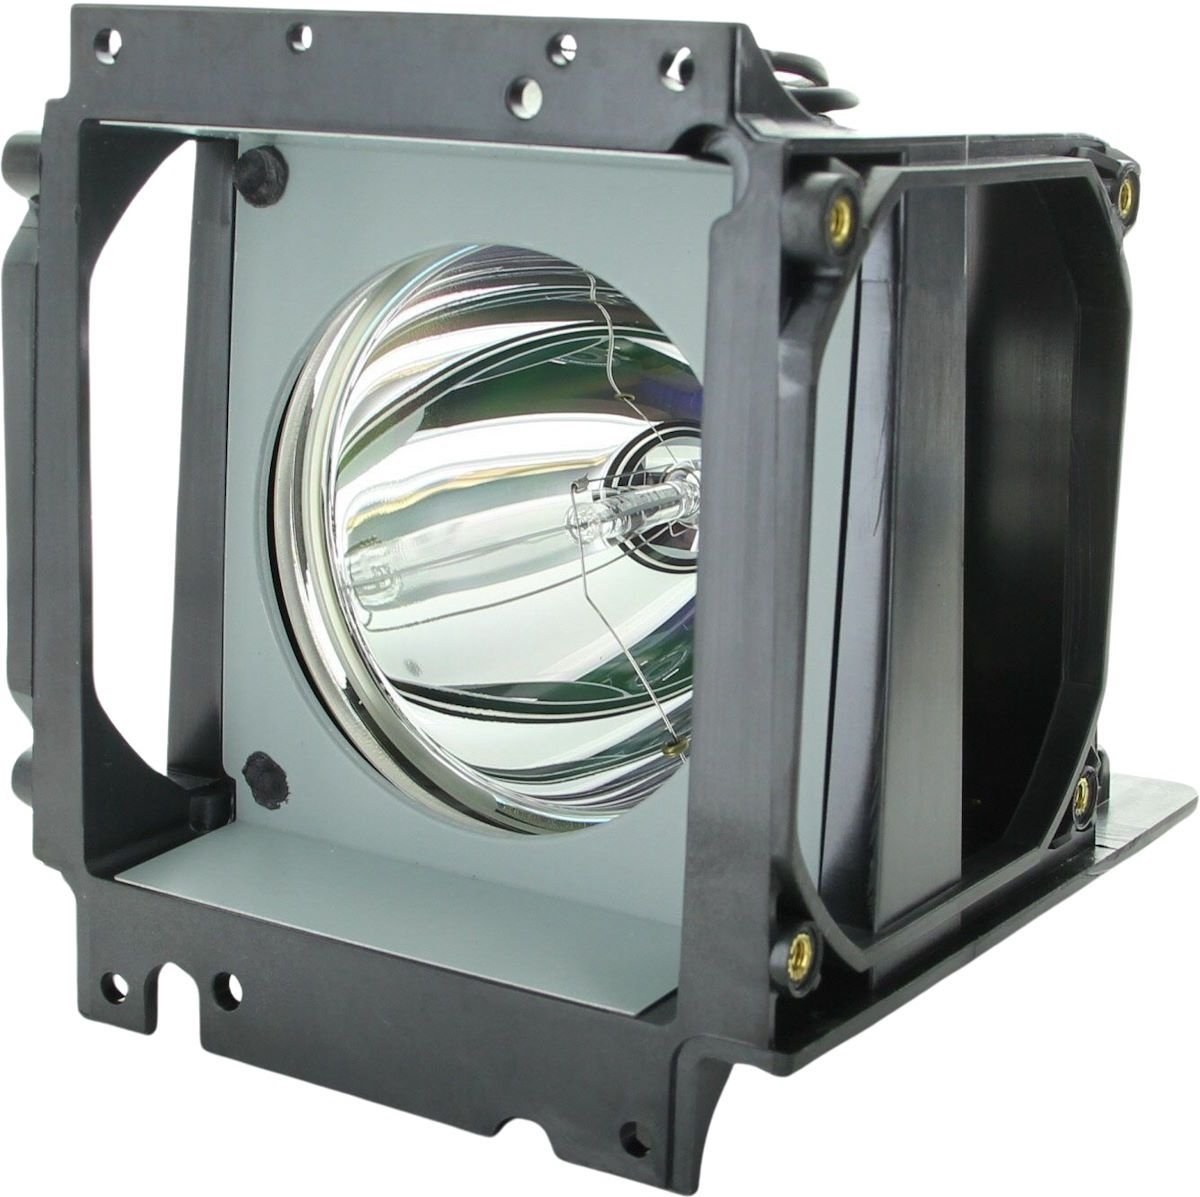 Beamerlamp geschikt voor de PLANAR Clarity c50RX beamer, lamp code 150-0142 / 151-0005 / 151-1063. Bevat originele P-VIP lamp, prestaties gelijk aan origineel.